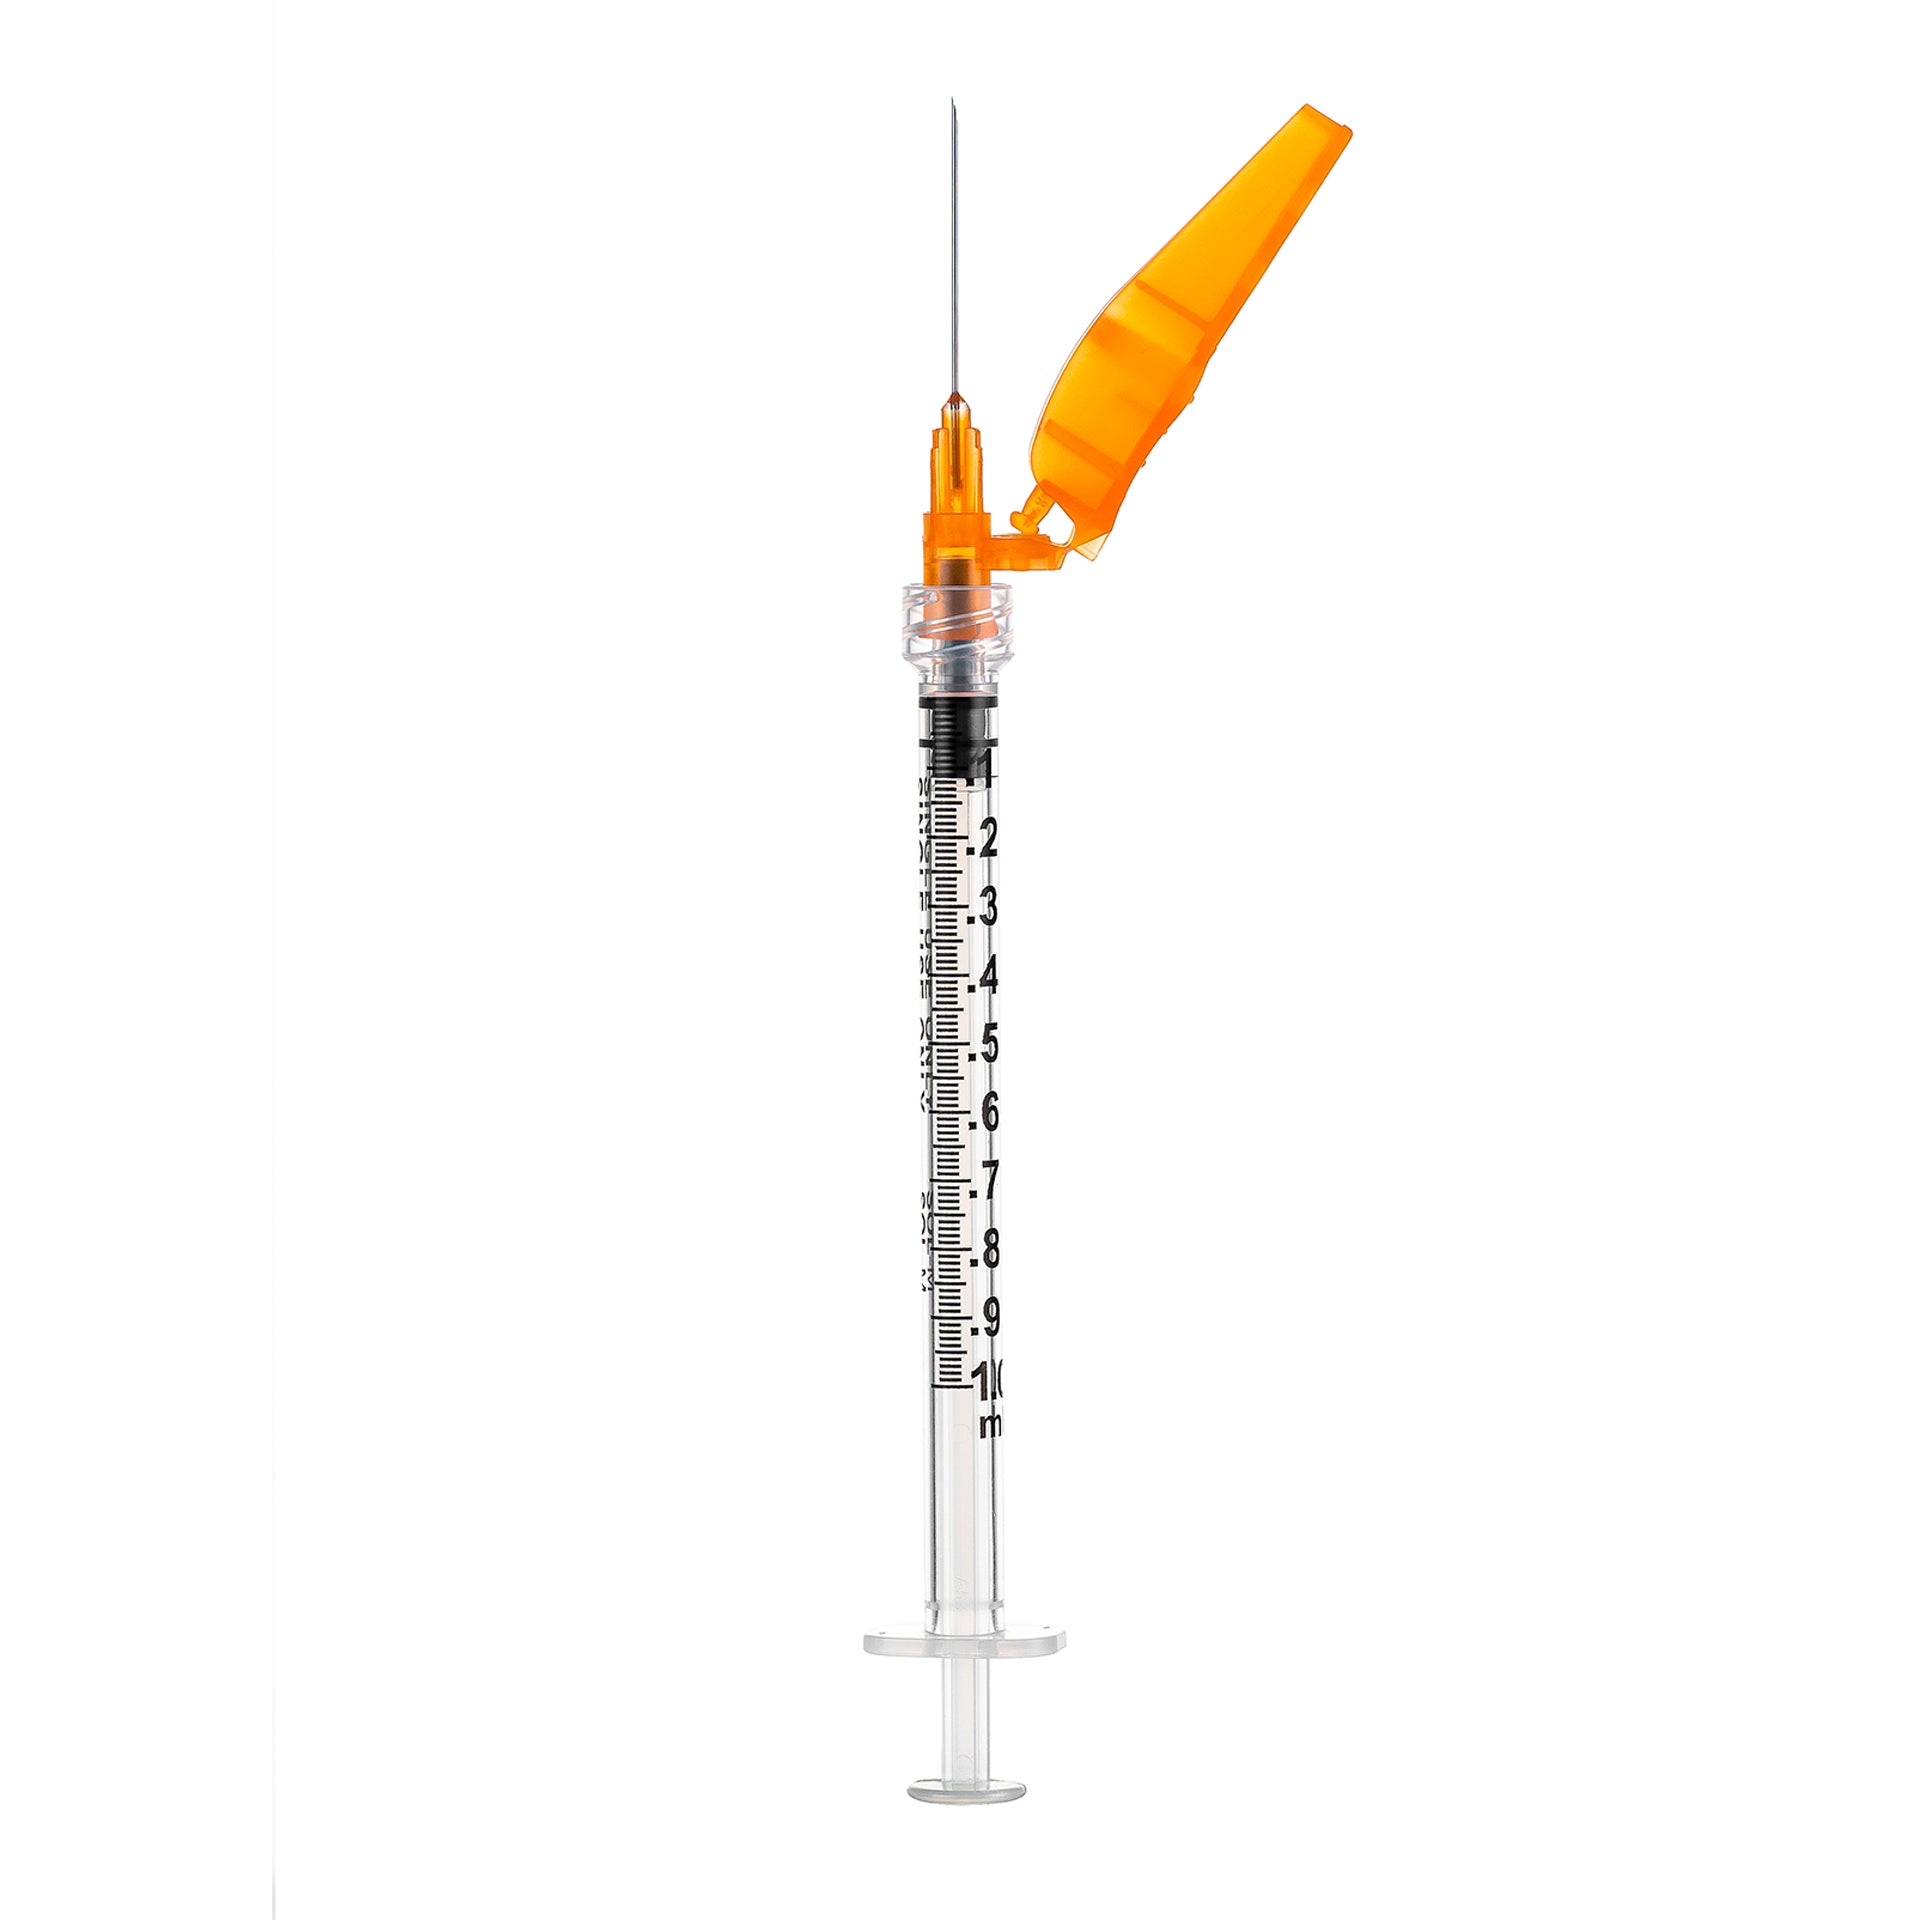 BX/50 - SOL-CARE 1ml Luer Lock Syringe w/Safety Needle 25G*5/8 (needle aside)